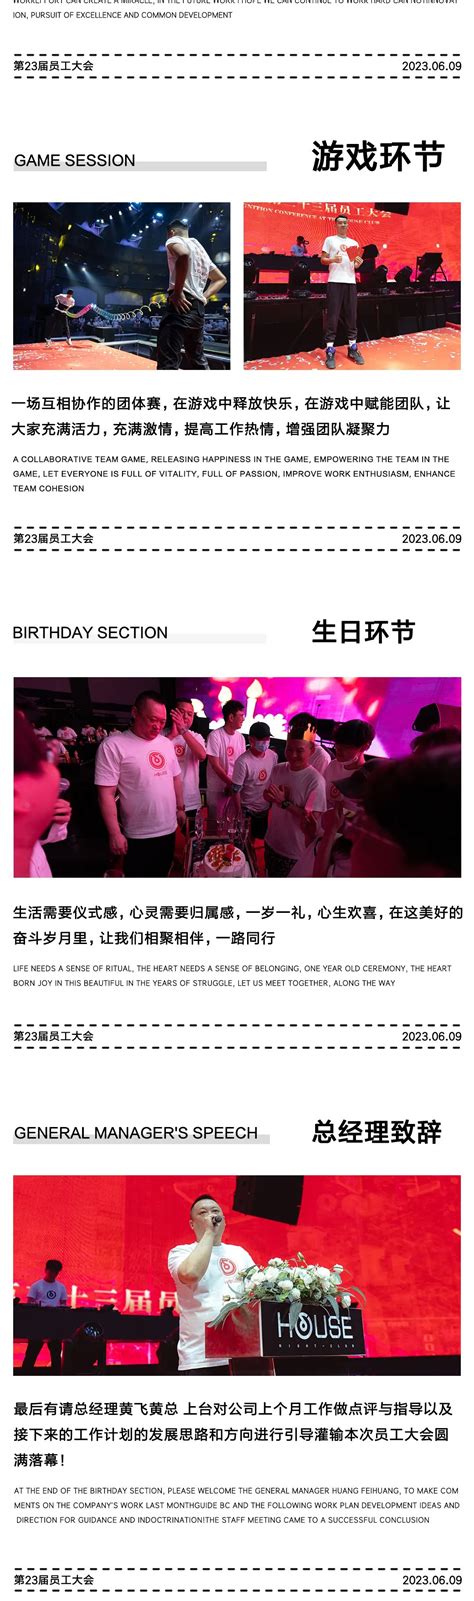 揭阳市总工会、市妇联联合举办个人信息保护日活动-广东省总工会